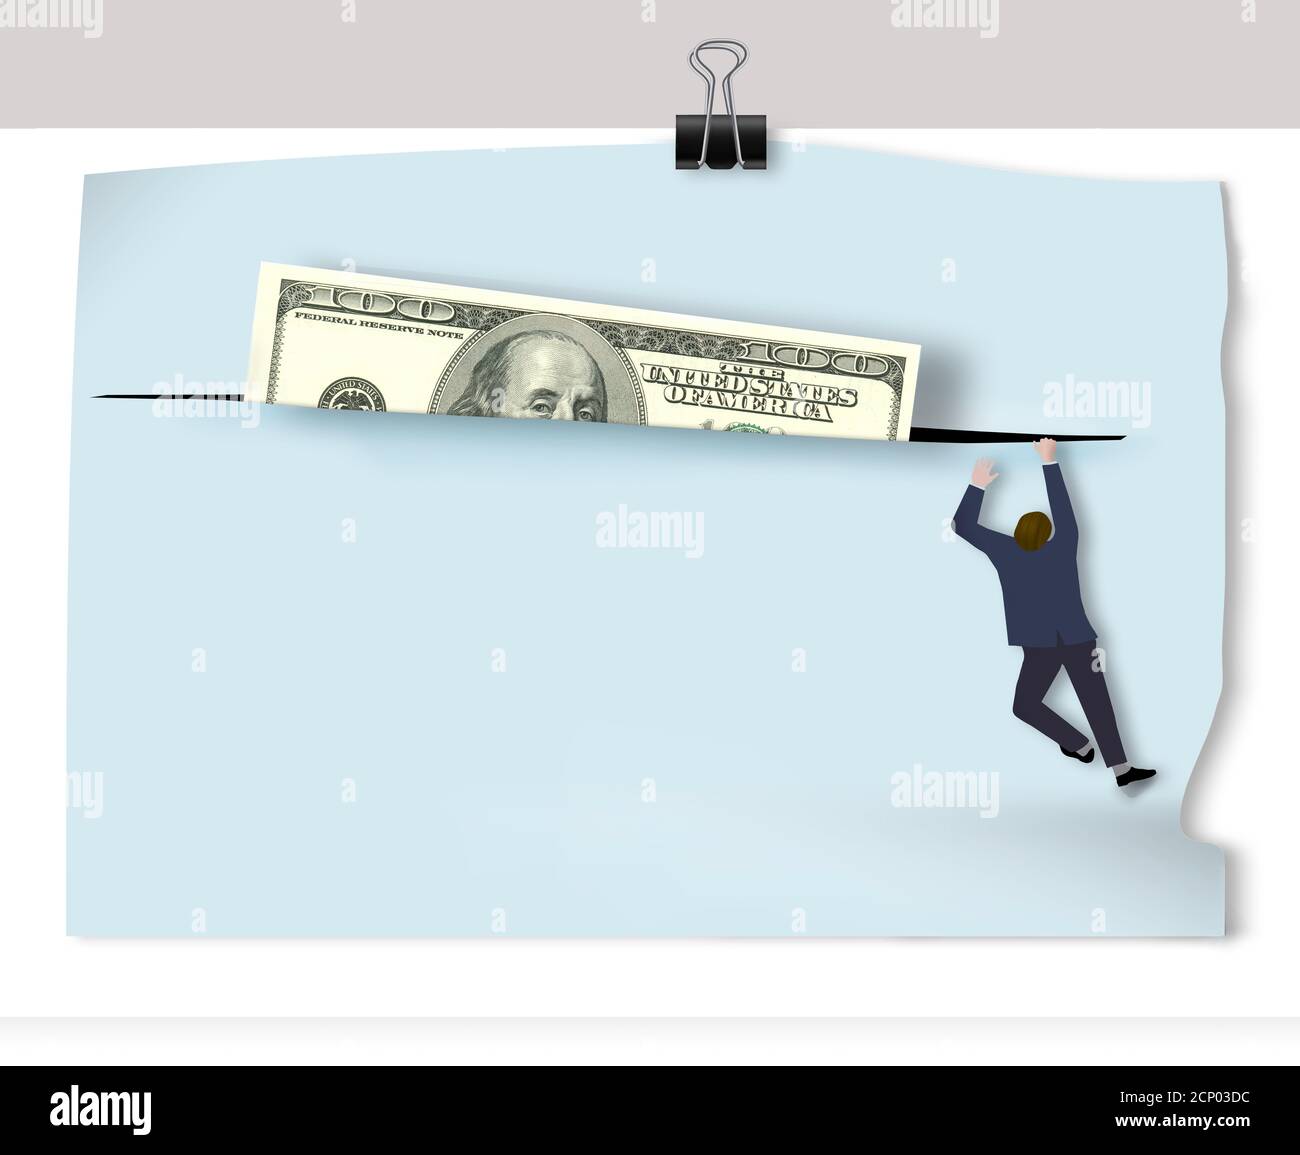 Un homme monte pour obtenir un billet de cent dollars qui est coincé dans une fente dans le matériel sur le mur. Banque D'Images